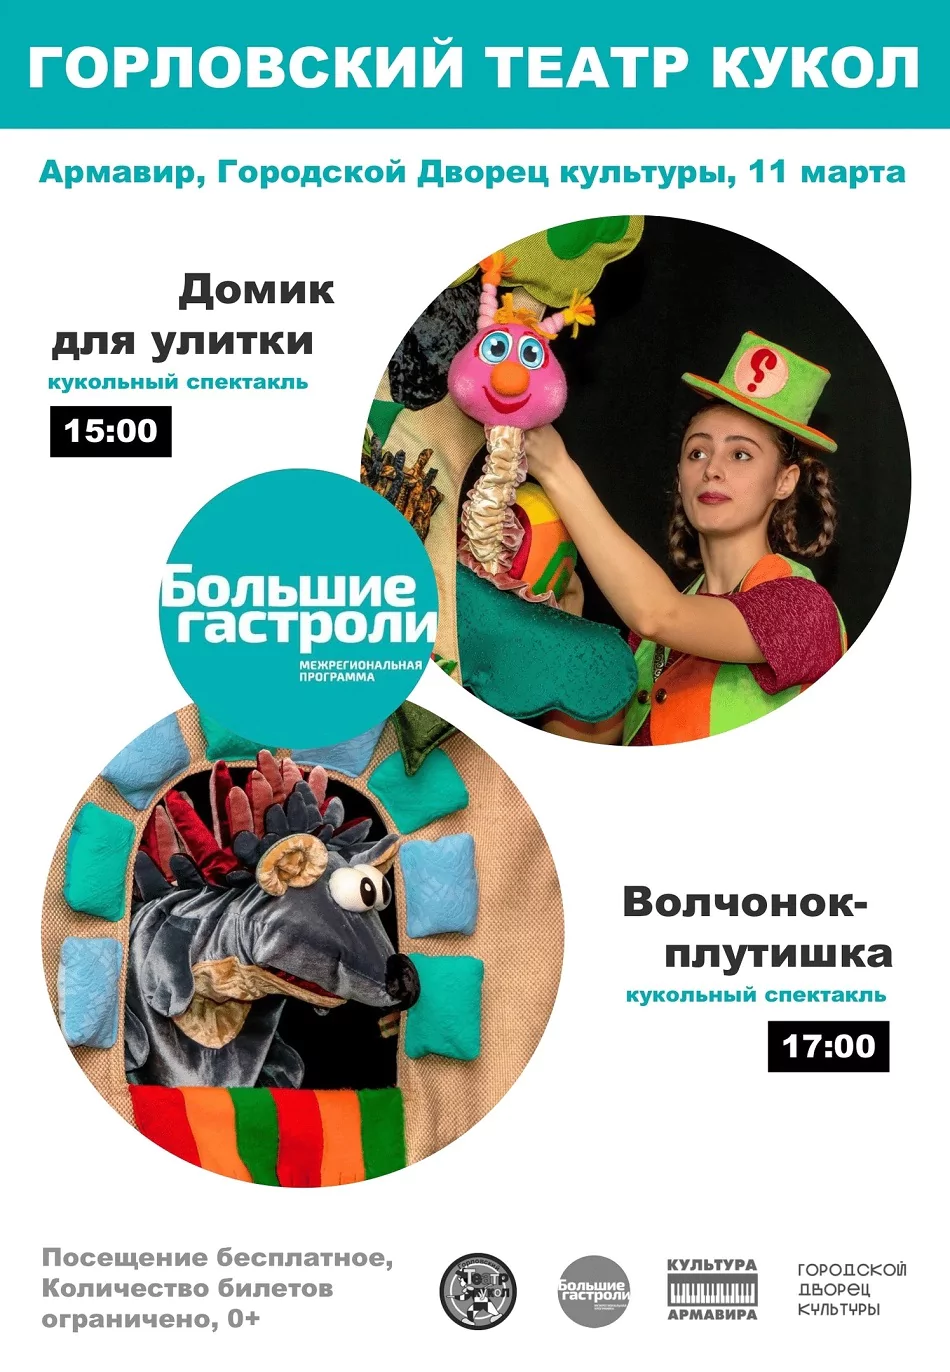 11 марта Армавир посетит Горловский театр кукол в рамках федеральной программы «Большие гастроли»